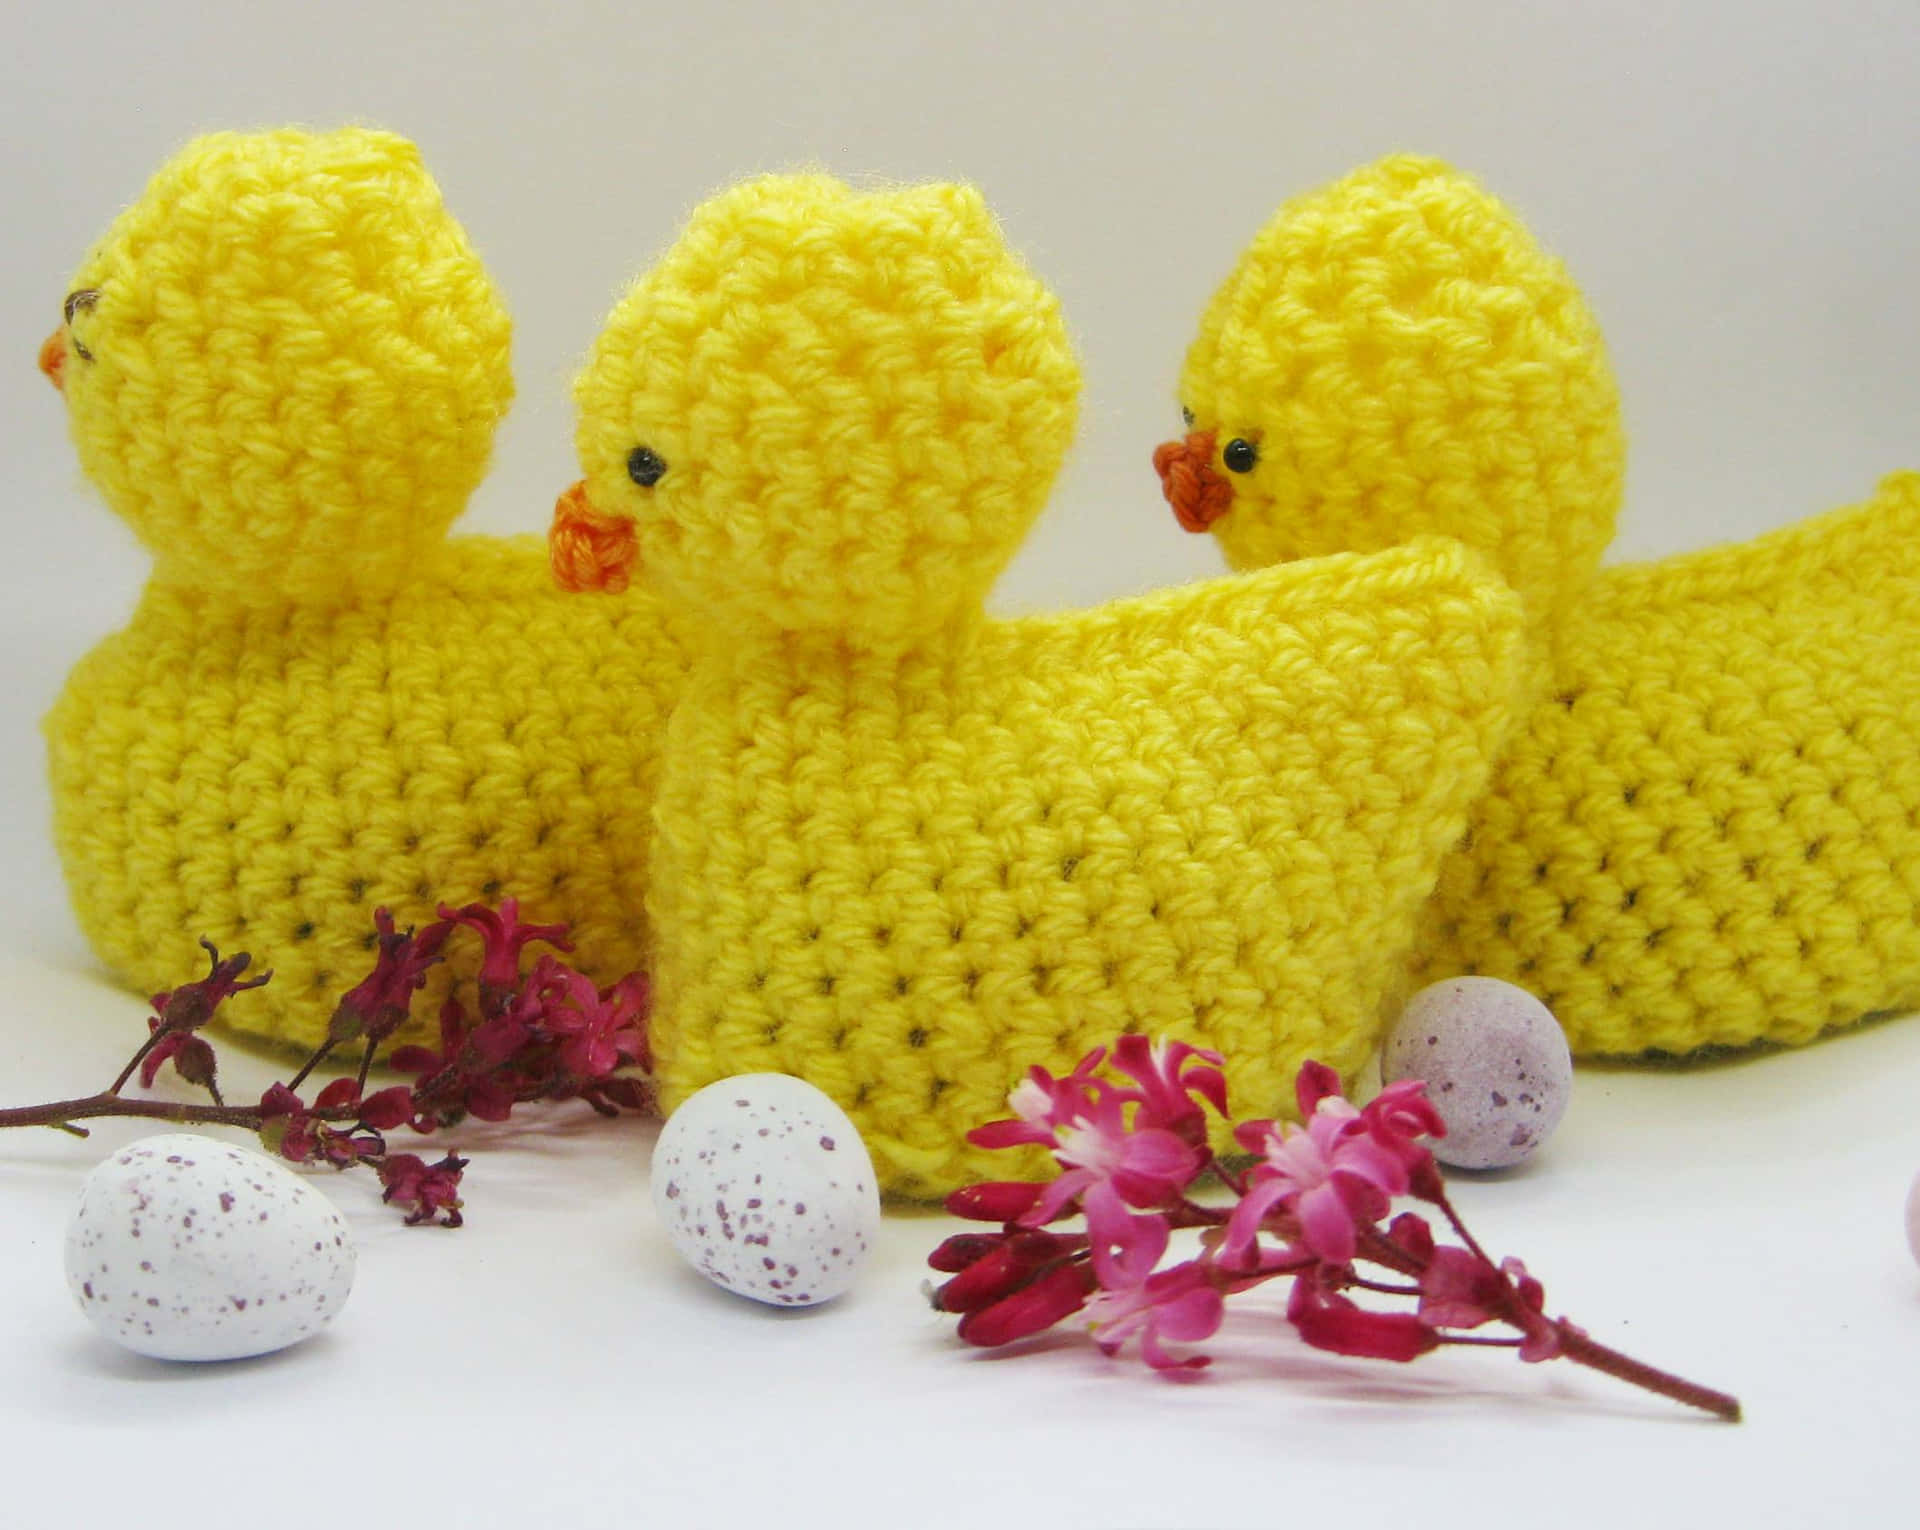 Baby Ducks Crochet Picture